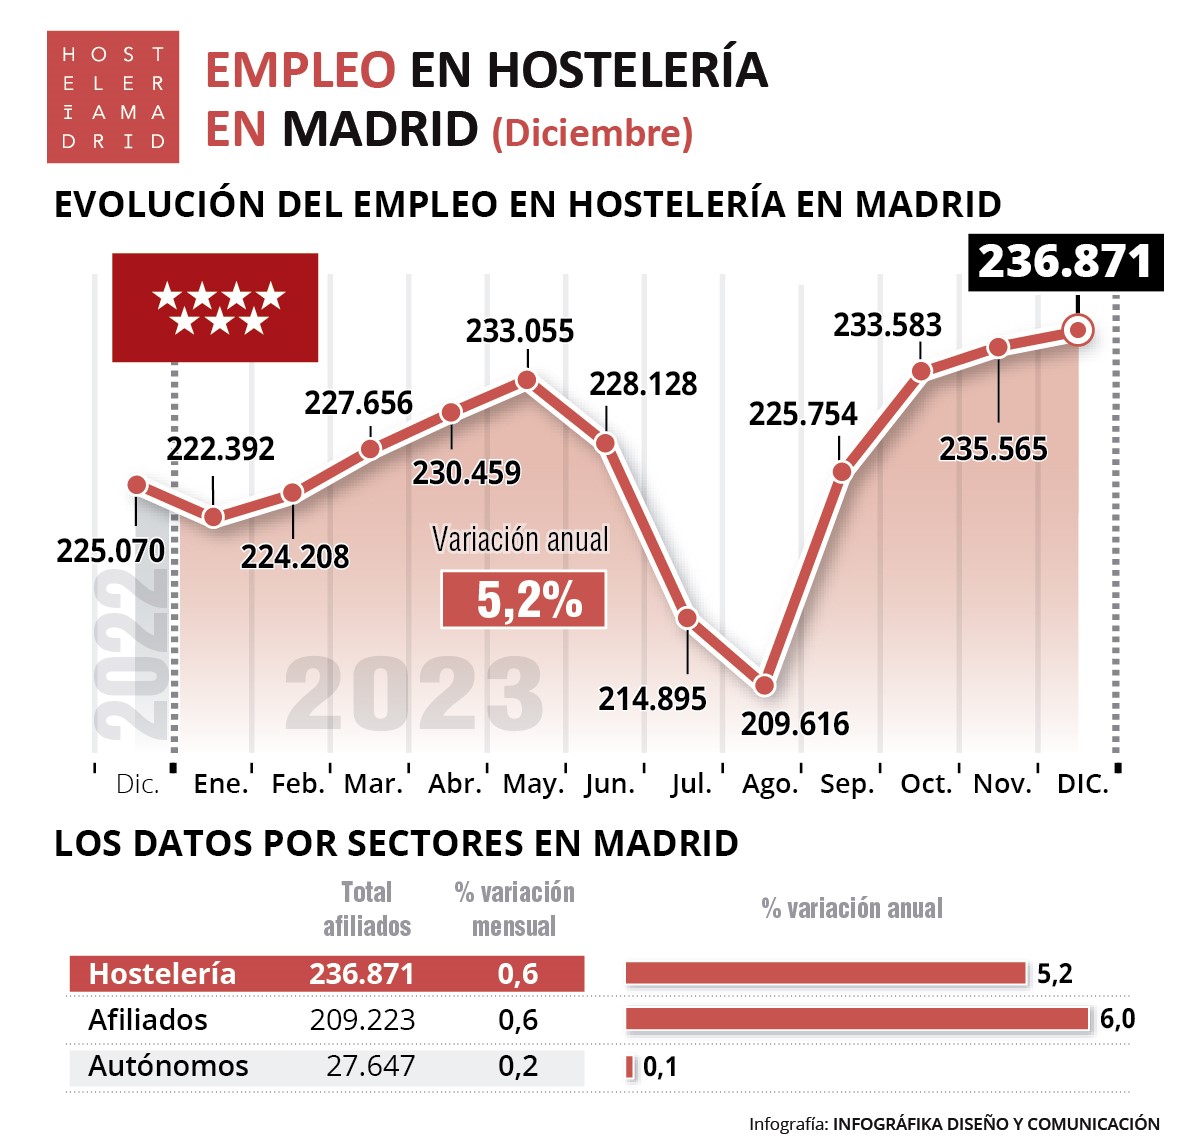 La campaña de Navidad marca récord de empleo en la Hostelería Madrid con 236.871 trabajadores en diciembre - La Viña